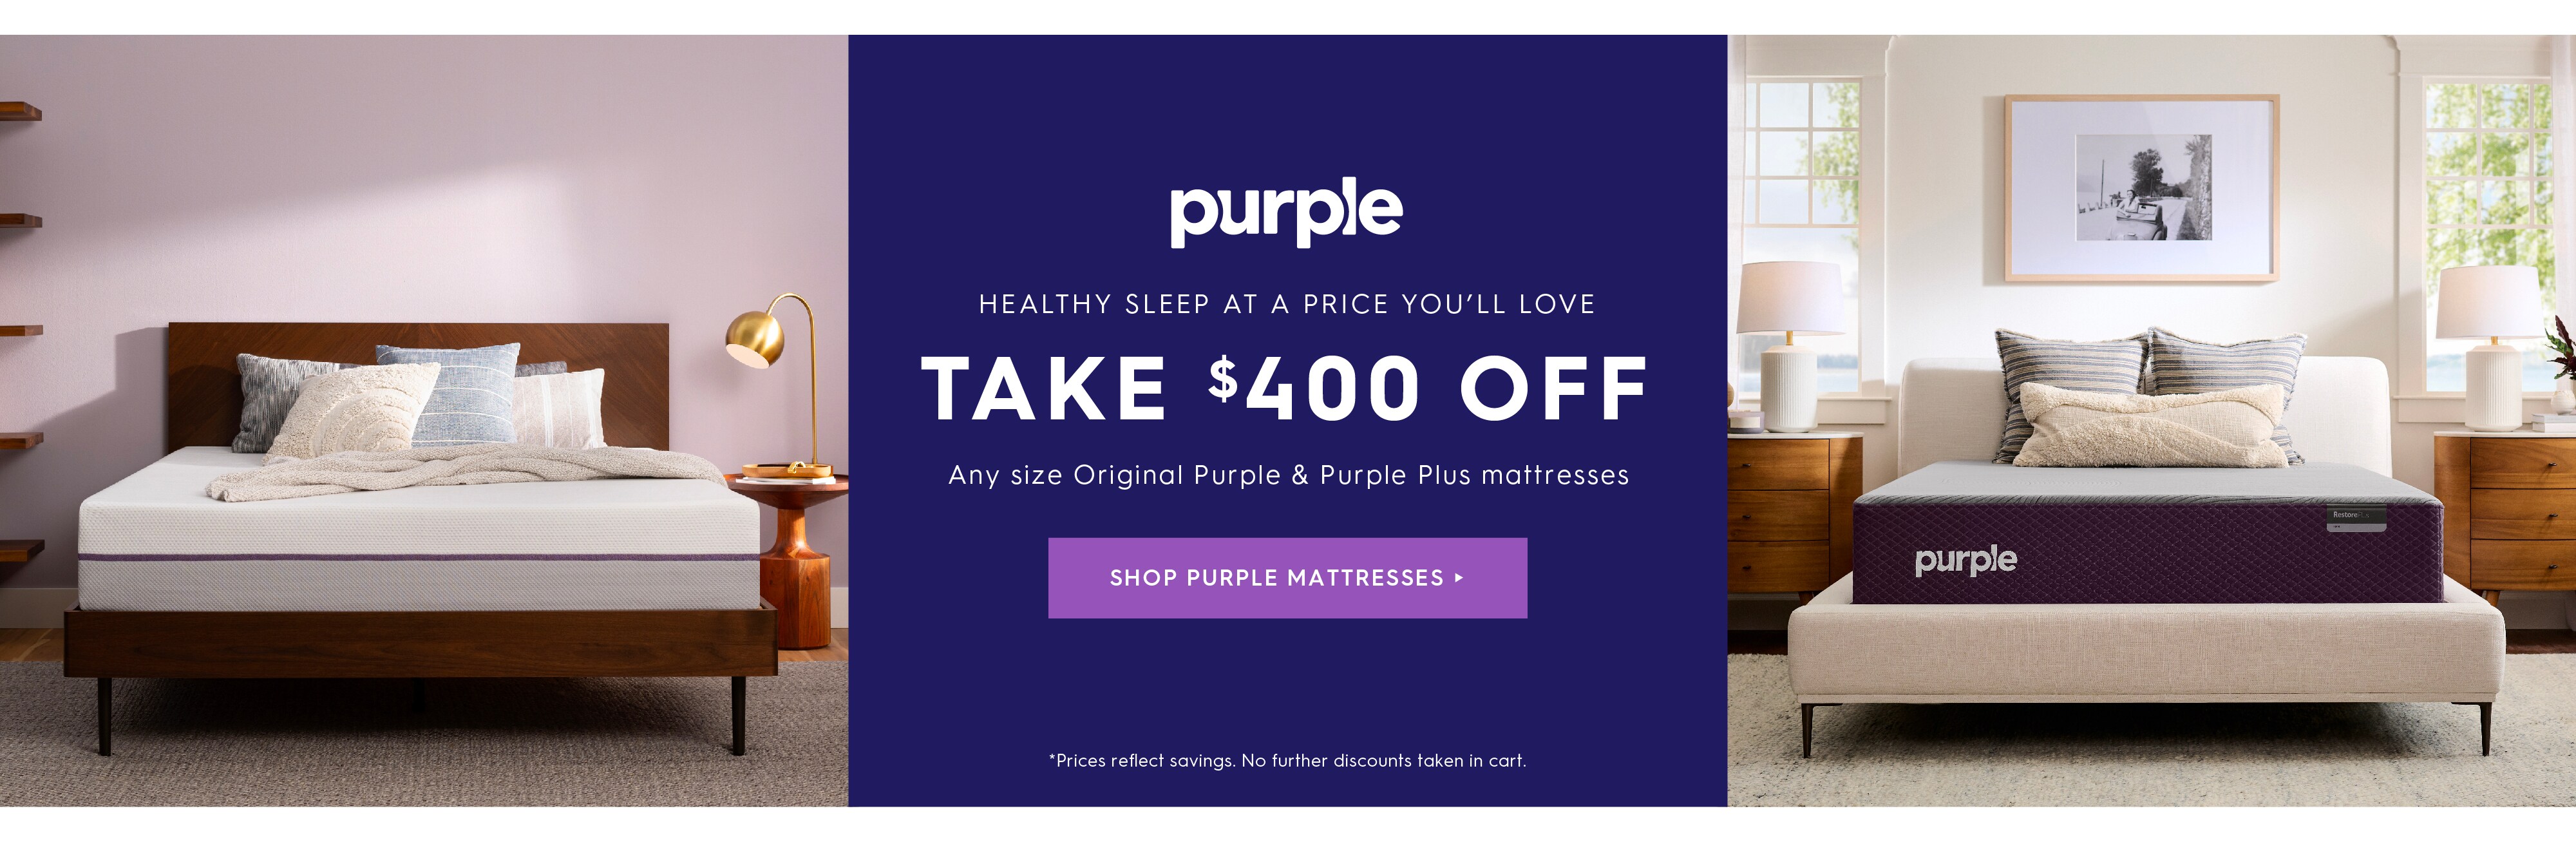 Shop Purple mattresses.